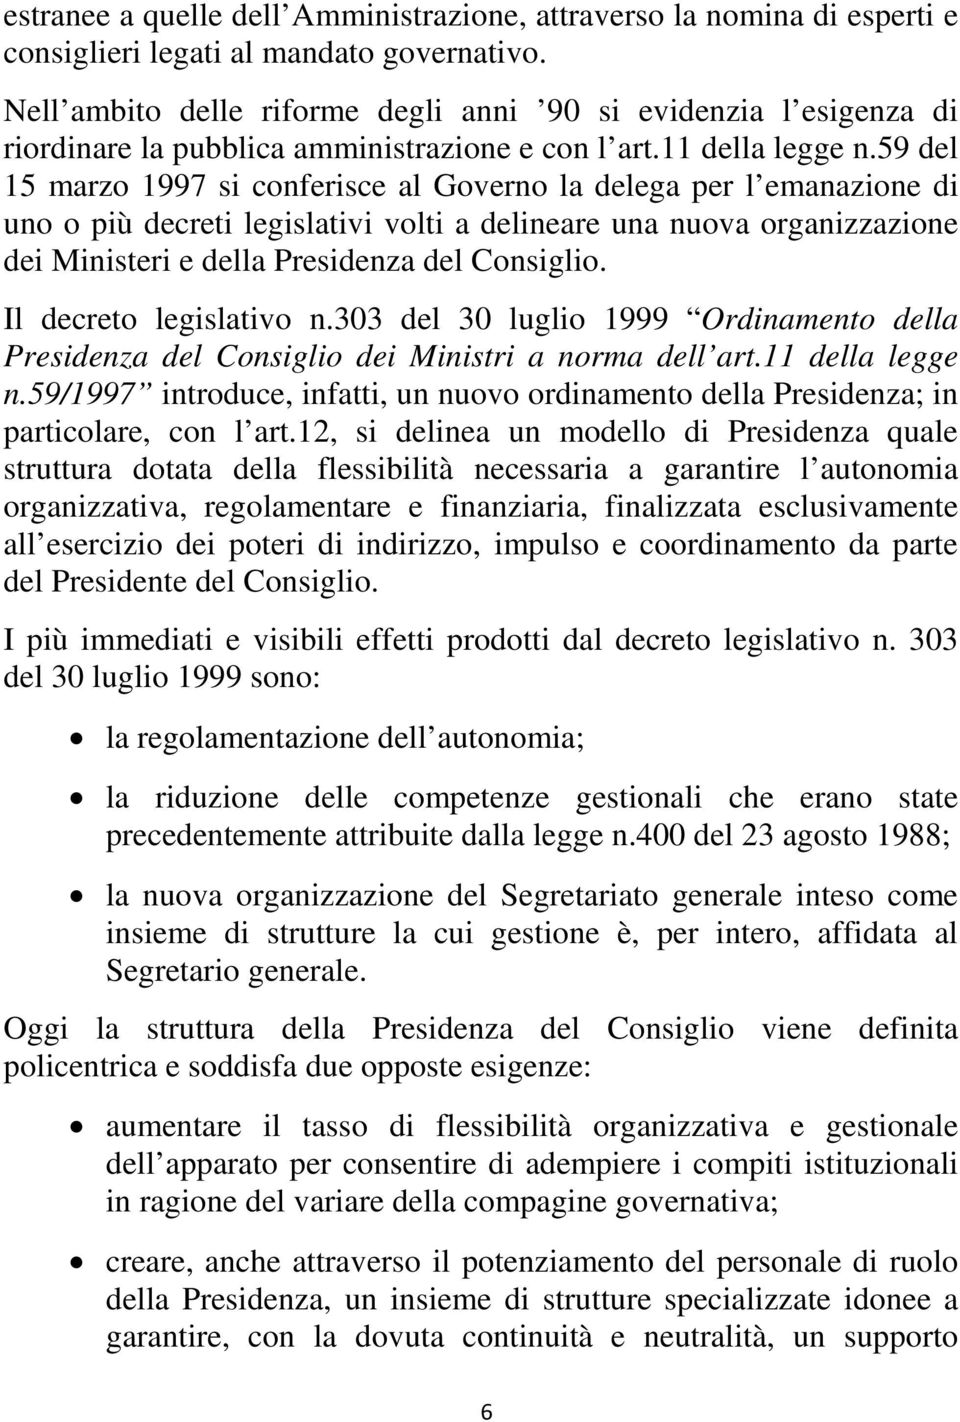 59 del 15 marzo 1997 si conferisce al Governo la delega per l emanazione di uno o più decreti legislativi volti a delineare una nuova organizzazione dei Ministeri e della Presidenza del Consiglio.